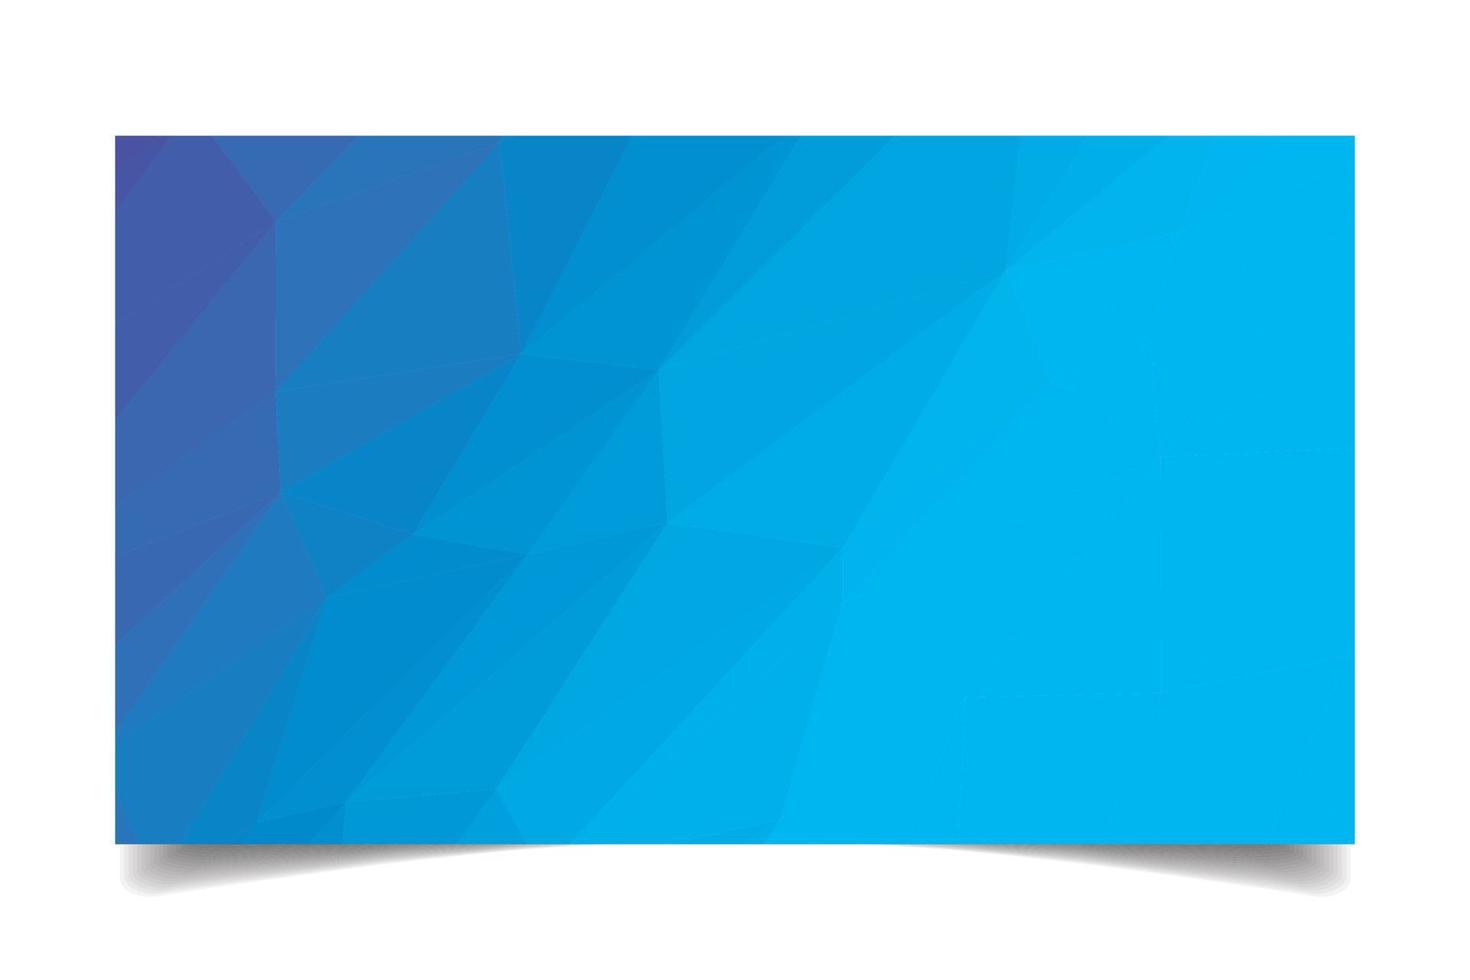 blaue Farbe triangulierter Hintergrundtexturvektor für Visitenkartenvorlage vektor